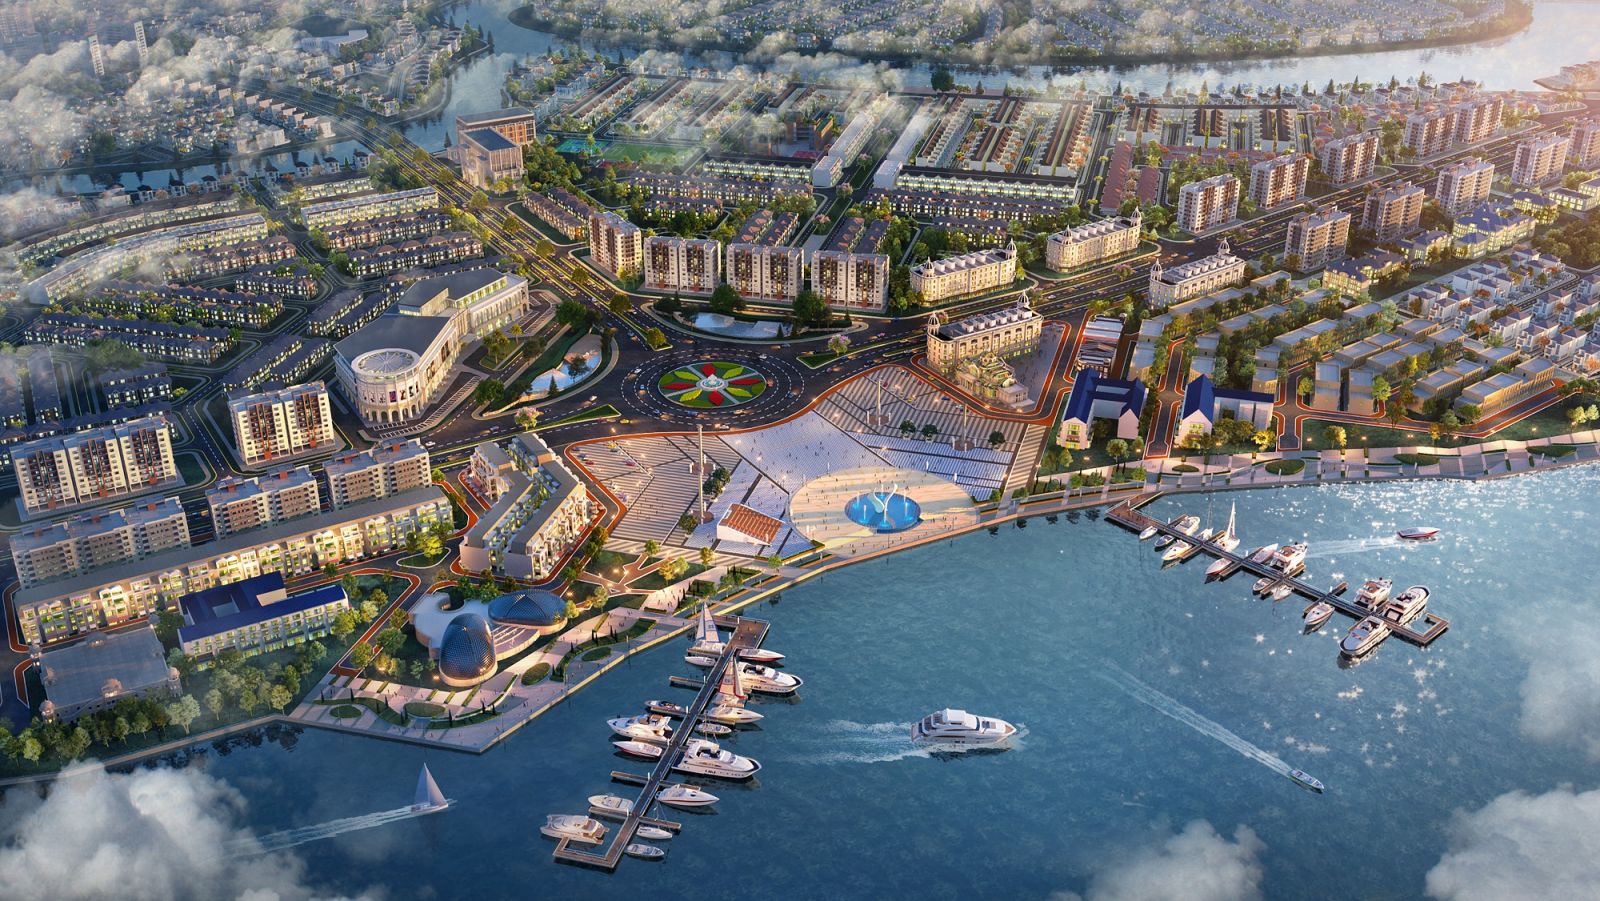 Tọa lạc ngay vị trí lõi trung tâm khu đô thị, Aqua Marina được quy hoạch như một tổ hợp vui chơi giải trí mua sắm đẳng cấp thỏa mãn lối sống đỉnh cao của cư dân và du khách thượng lưu.